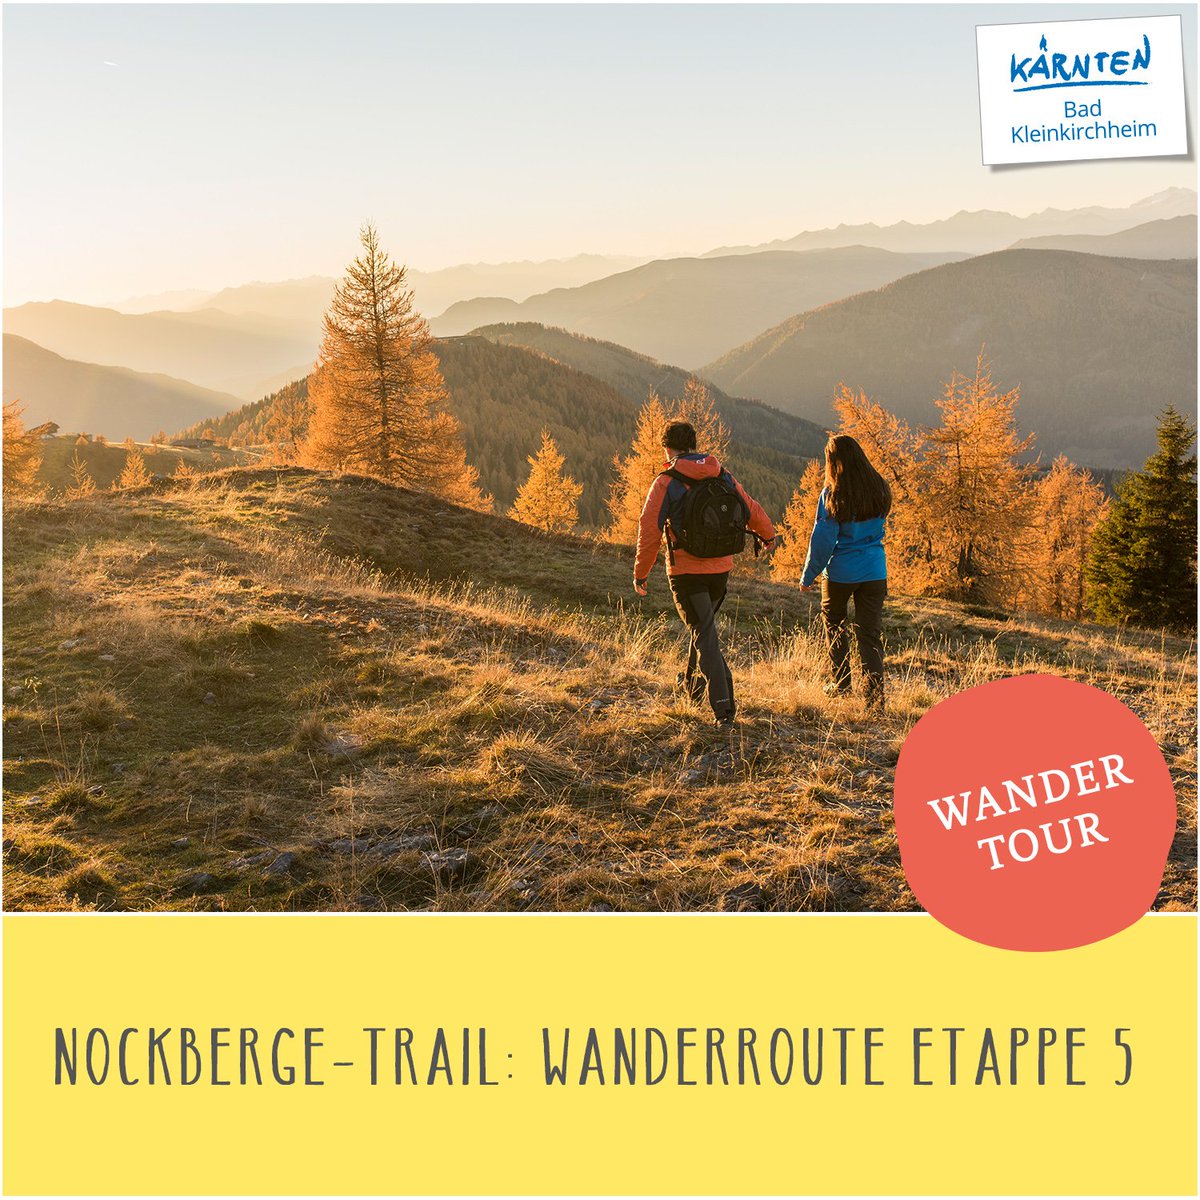 Hier unser Wander-Tipp der Woche 🥾 🤩 Nockberge-Trail: Wanderroute Etappe 5 ⛰ Alle Infos zur Wanderung findet ihr hier: ➡️➡️ bit.ly/WandertourenBKK